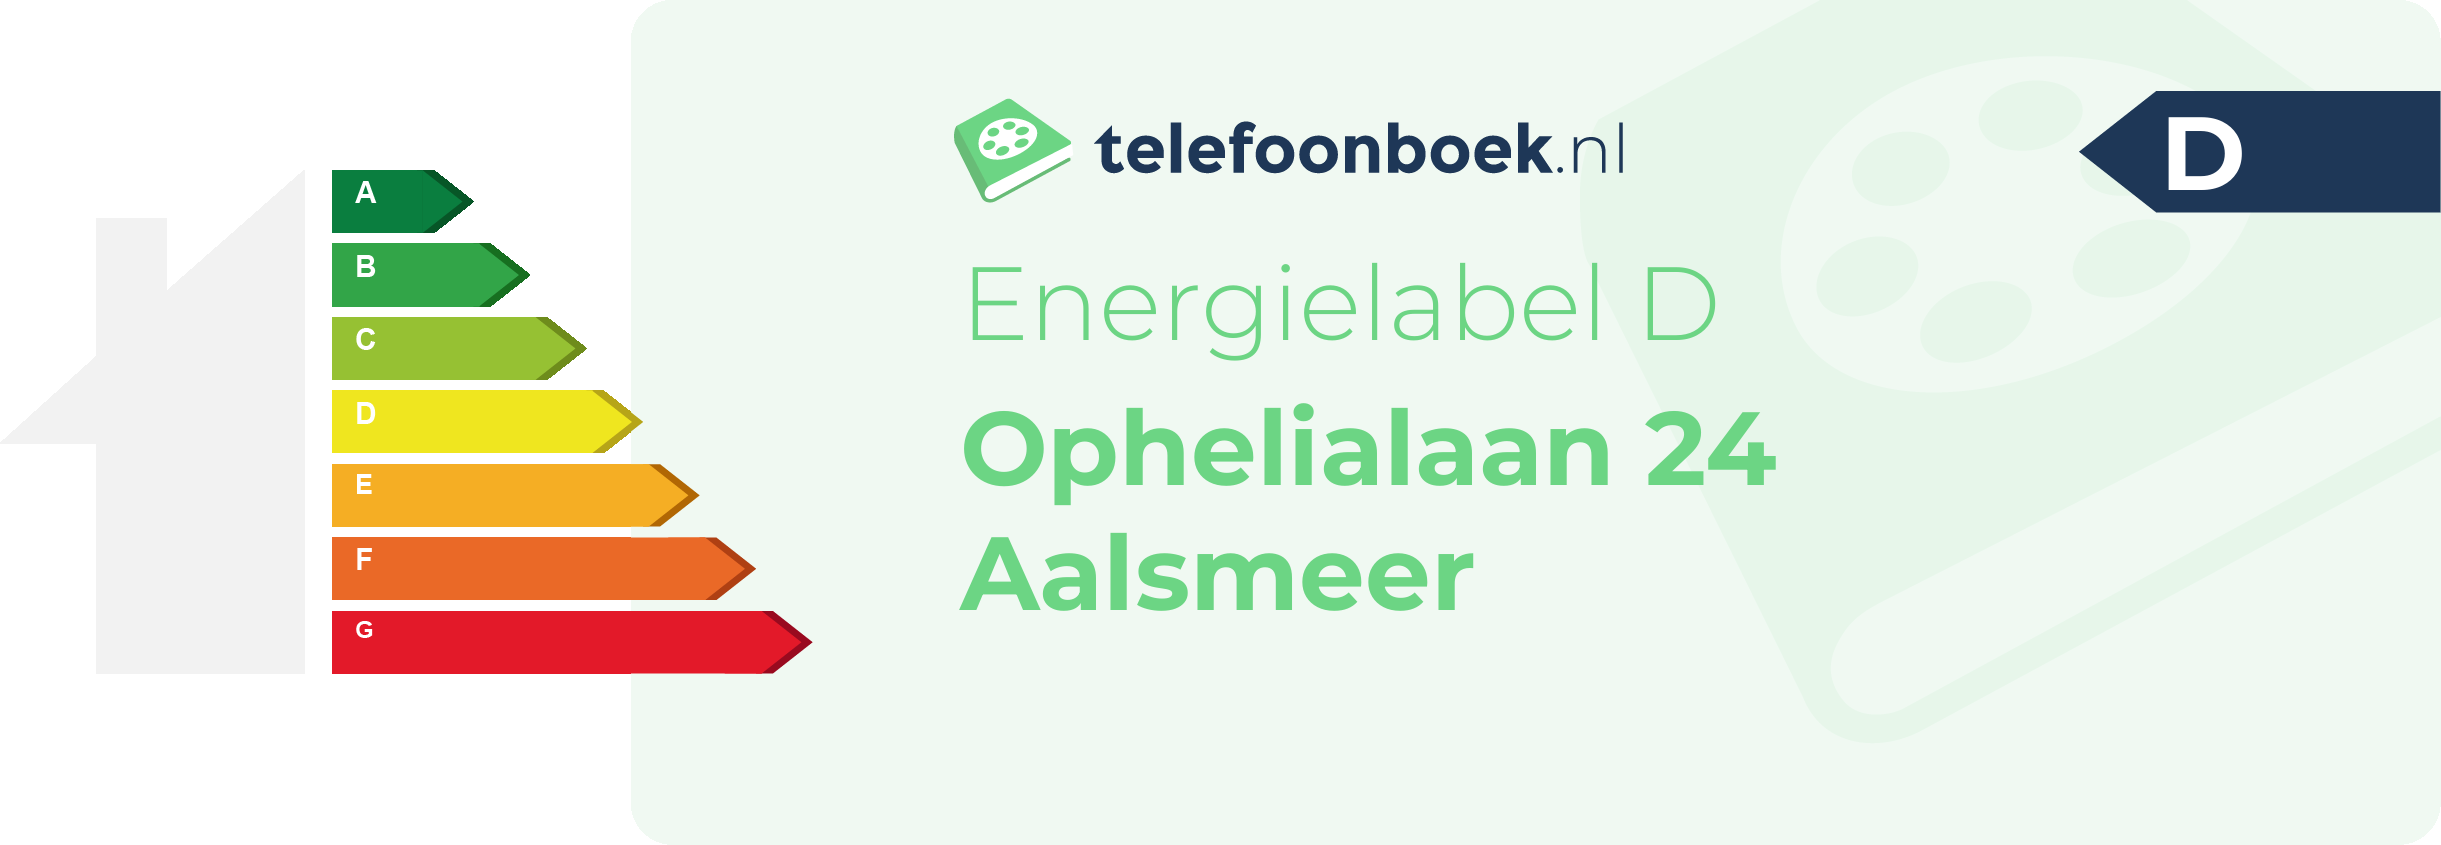 Energielabel Ophelialaan 24 Aalsmeer